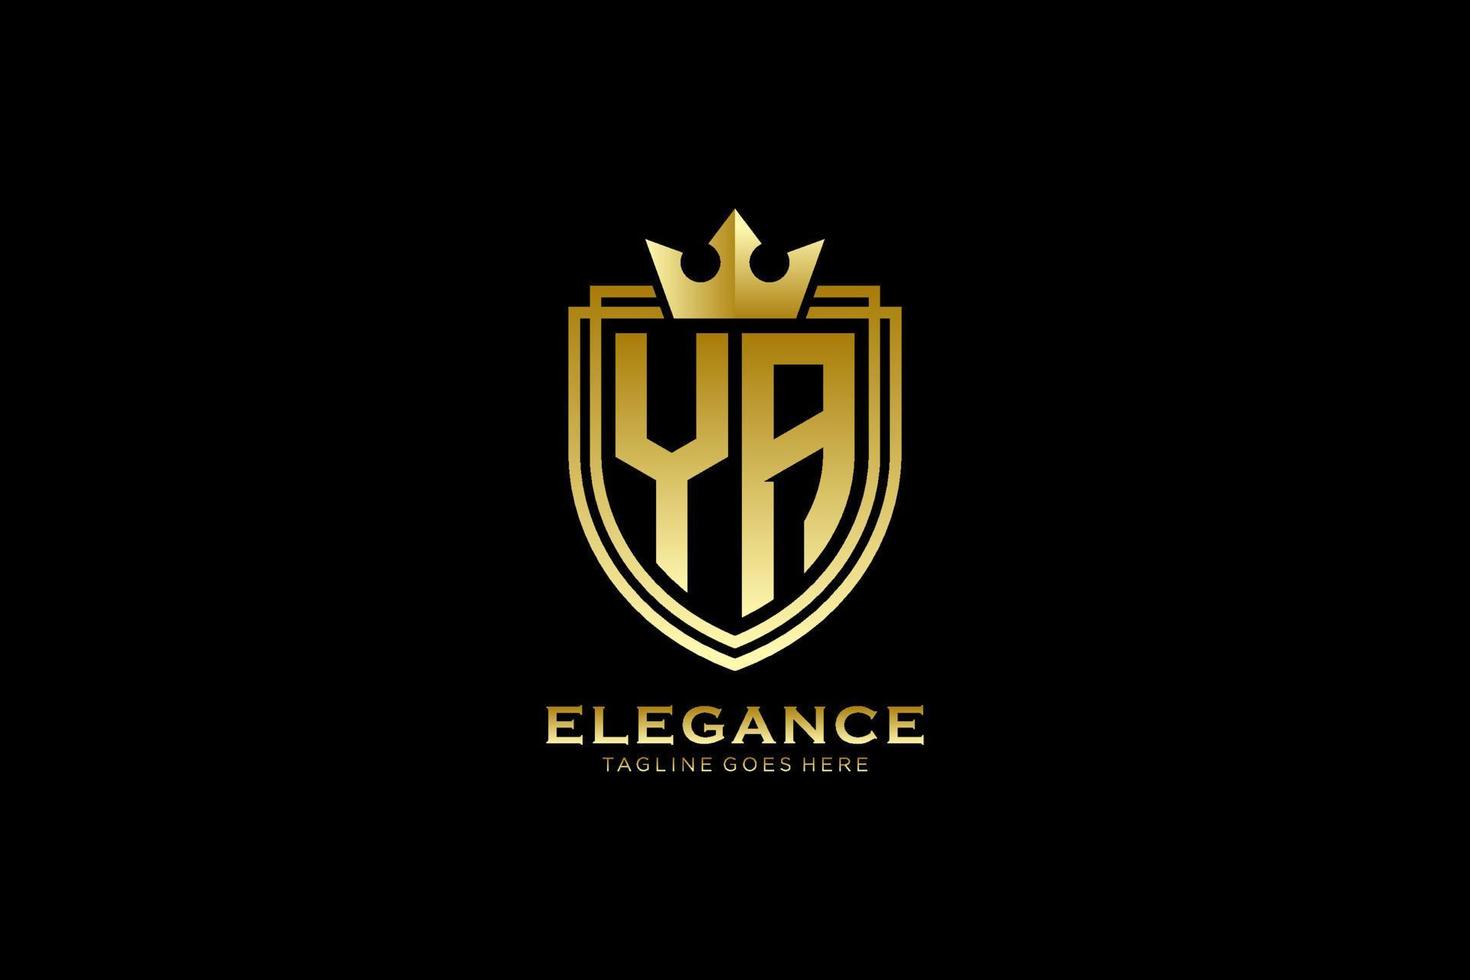 första ya elegant lyx monogram logotyp eller bricka mall med rullar och kunglig krona - perfekt för lyxig branding projekt vektor